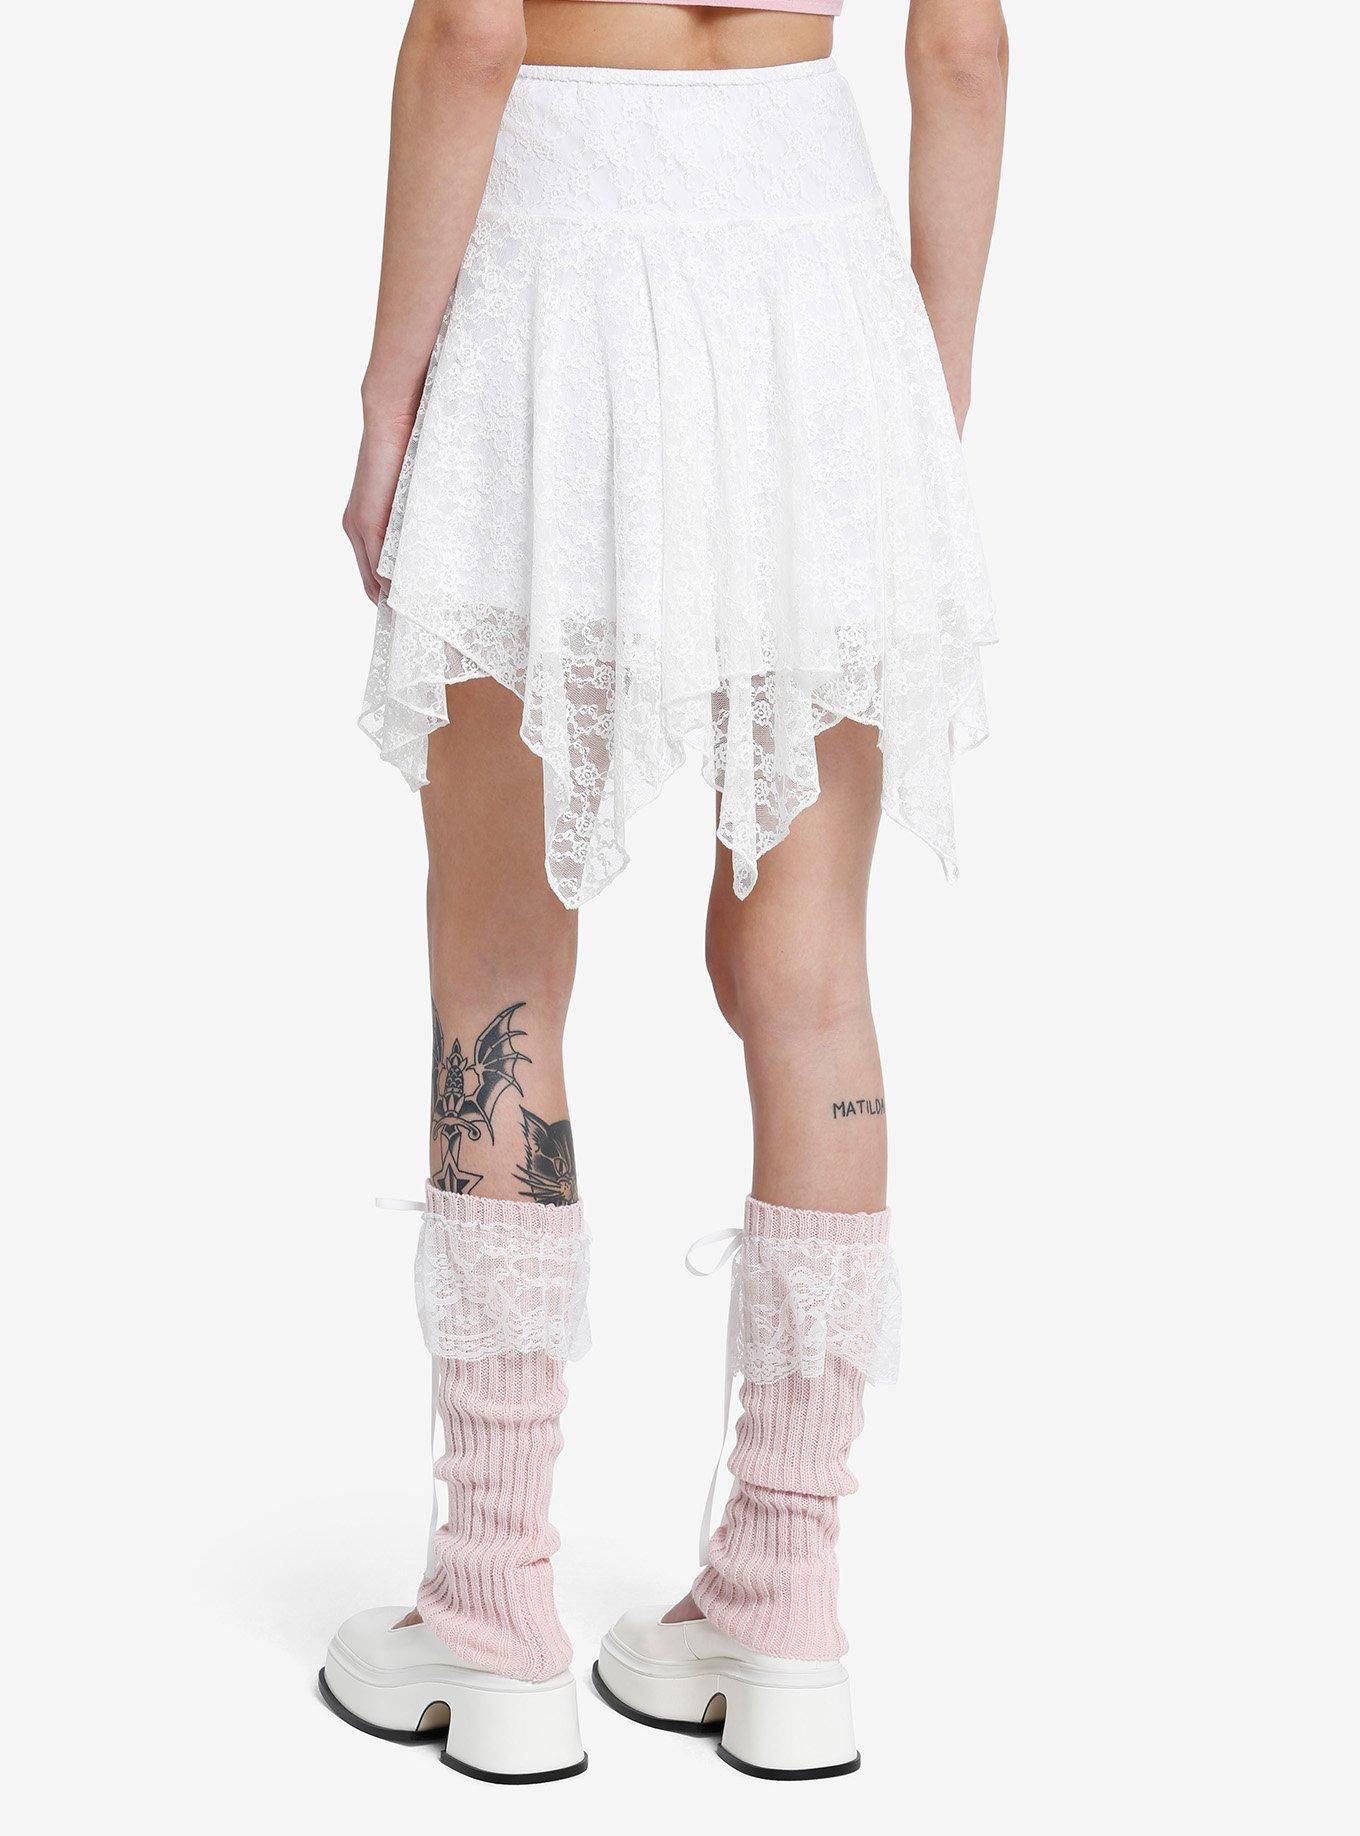 Sweet Society White Lace Rose Hanky Hem Skirt, PINK, alternate